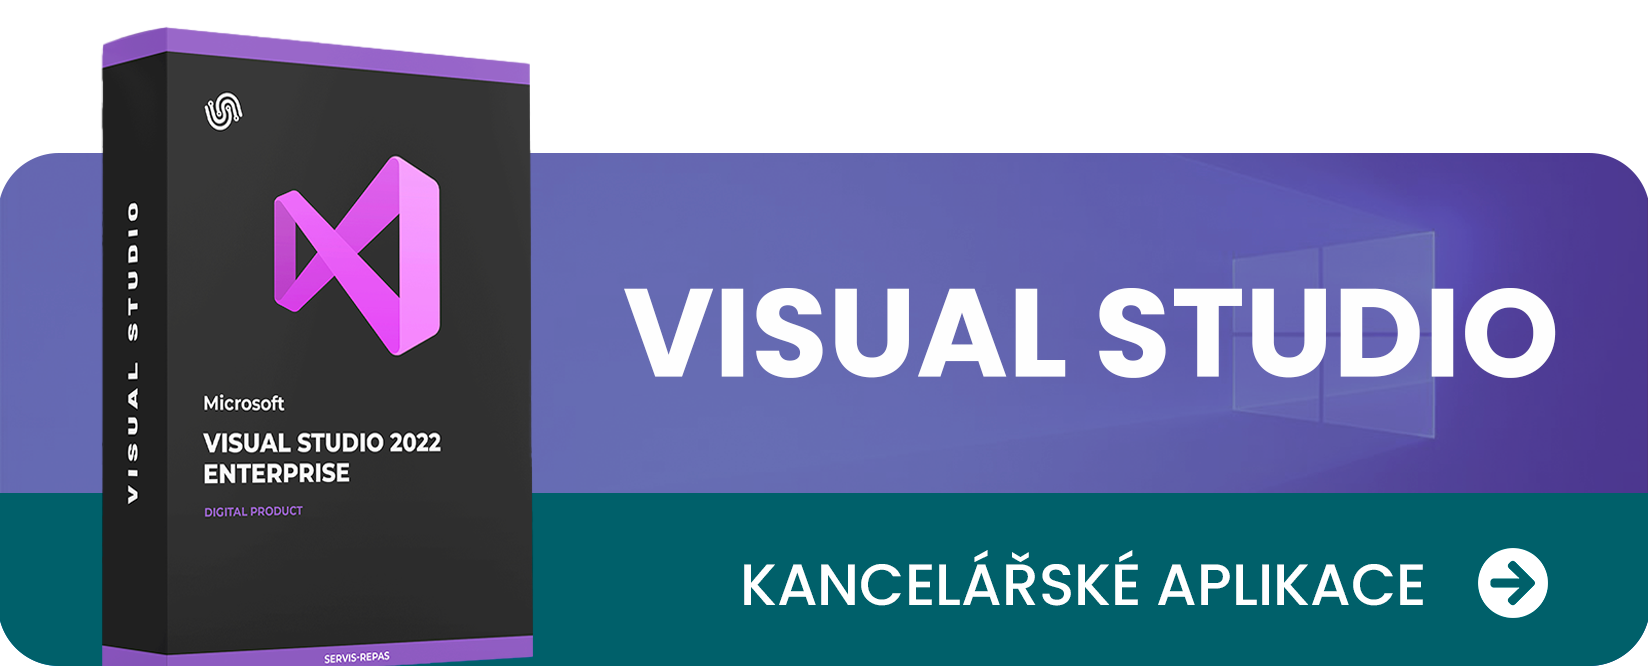 Visual Studio Home Page